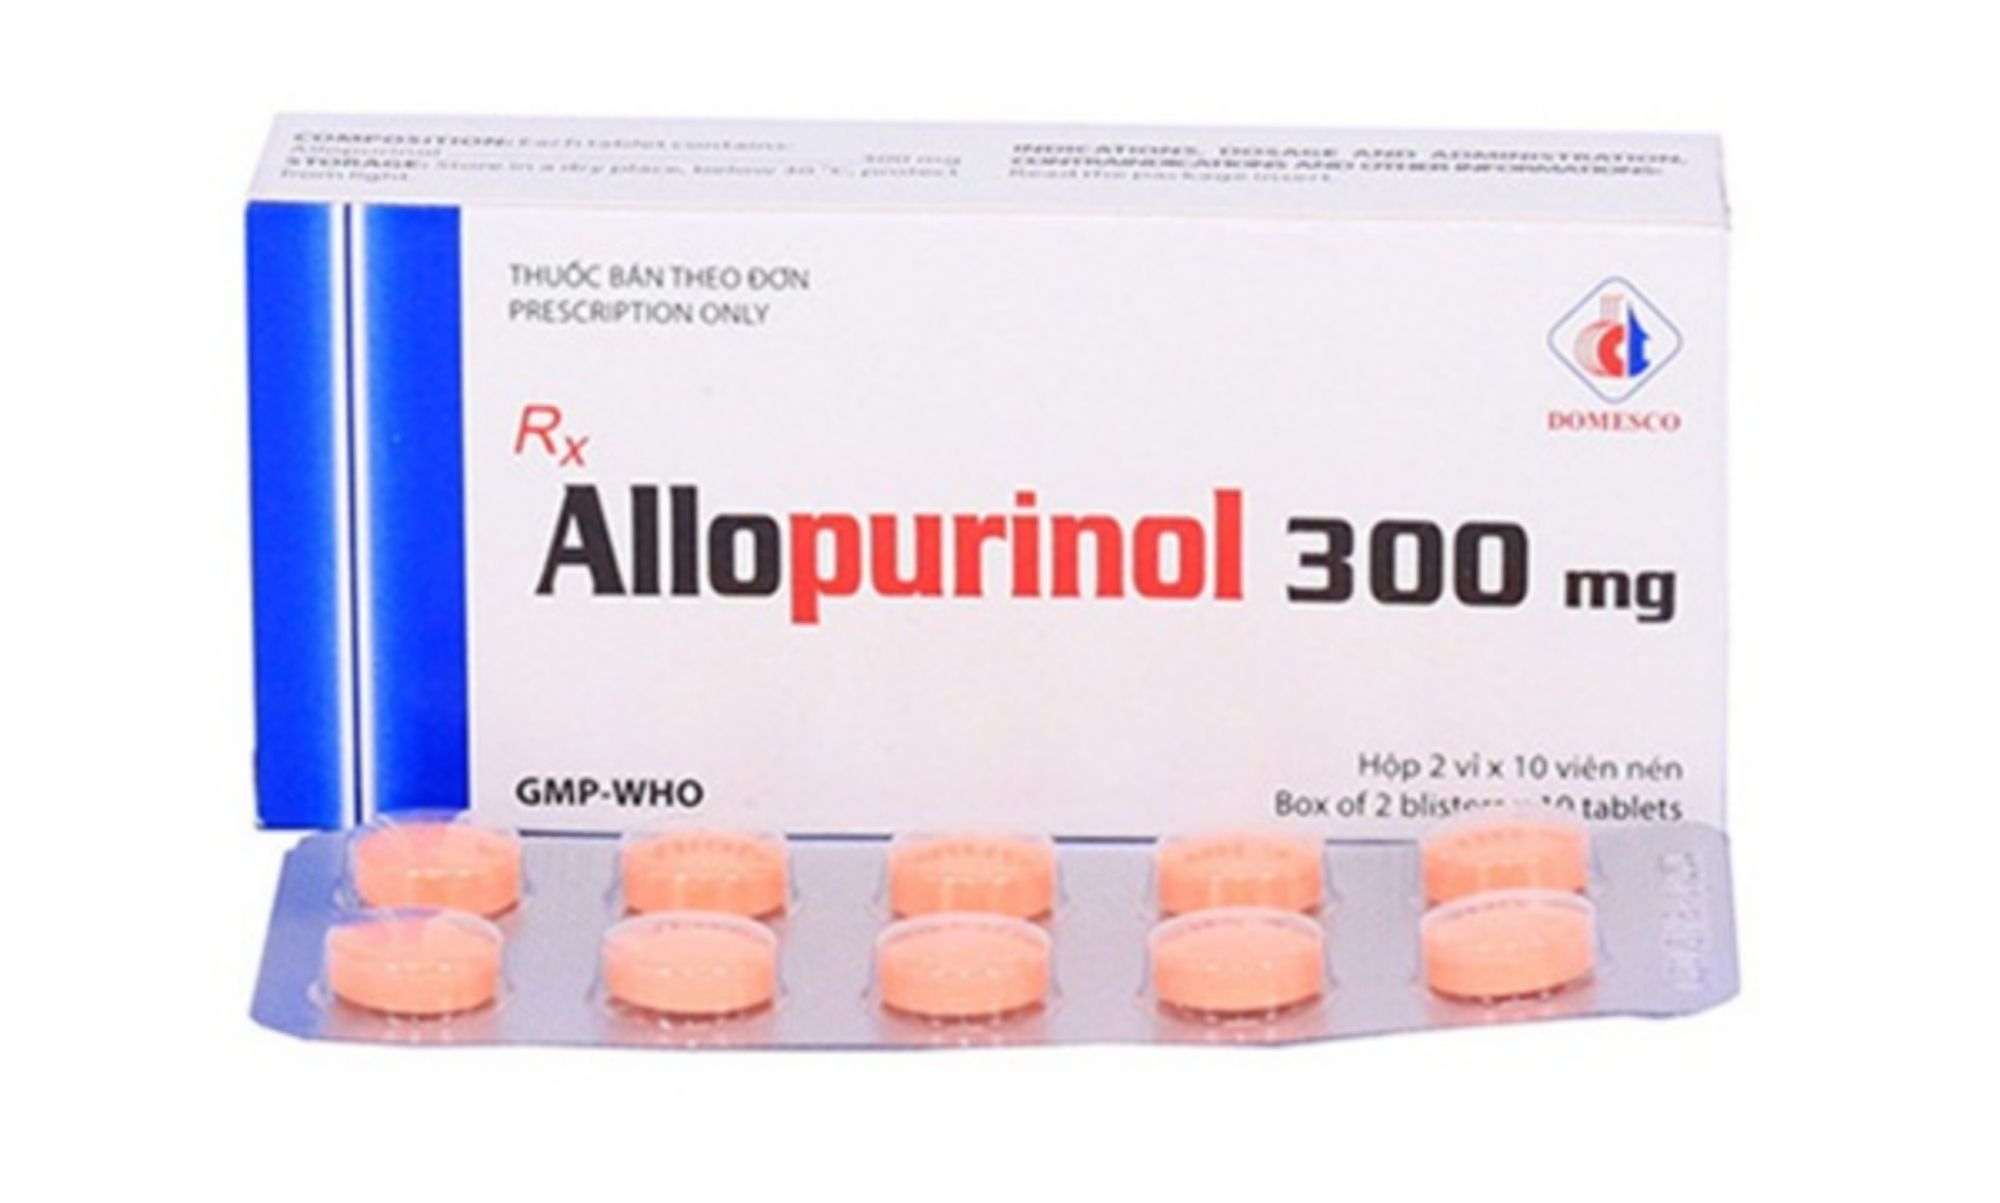 Allopurinol dạng viên nén: Công dụng, liều dùng và tác dụng phụ